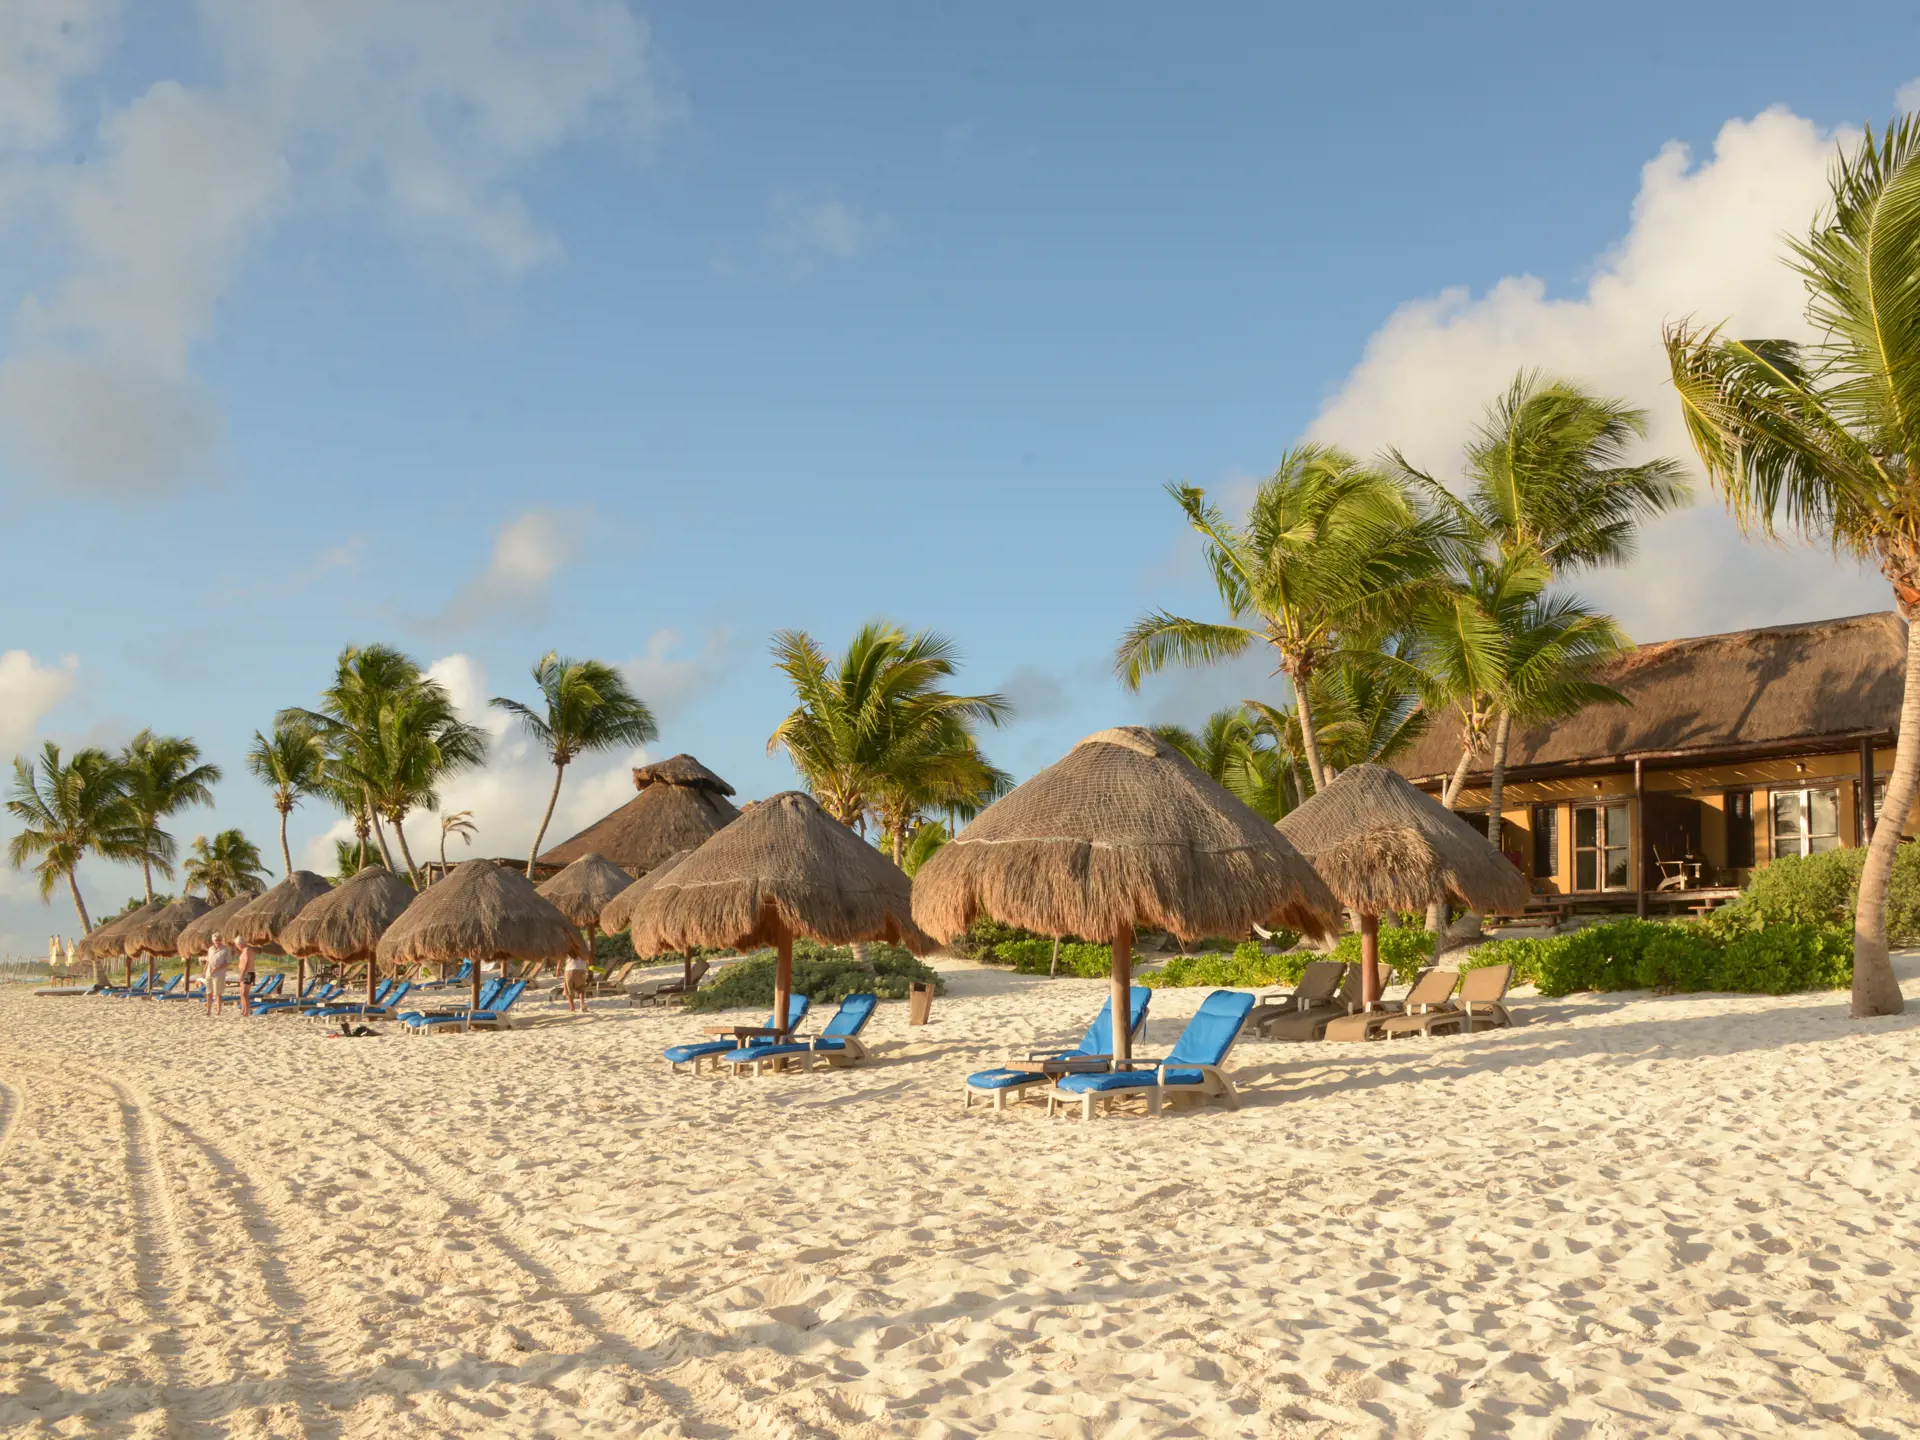 HIP TULUM - Her kan I nyde afslapning og solbade på hotellets private strandafsnit.